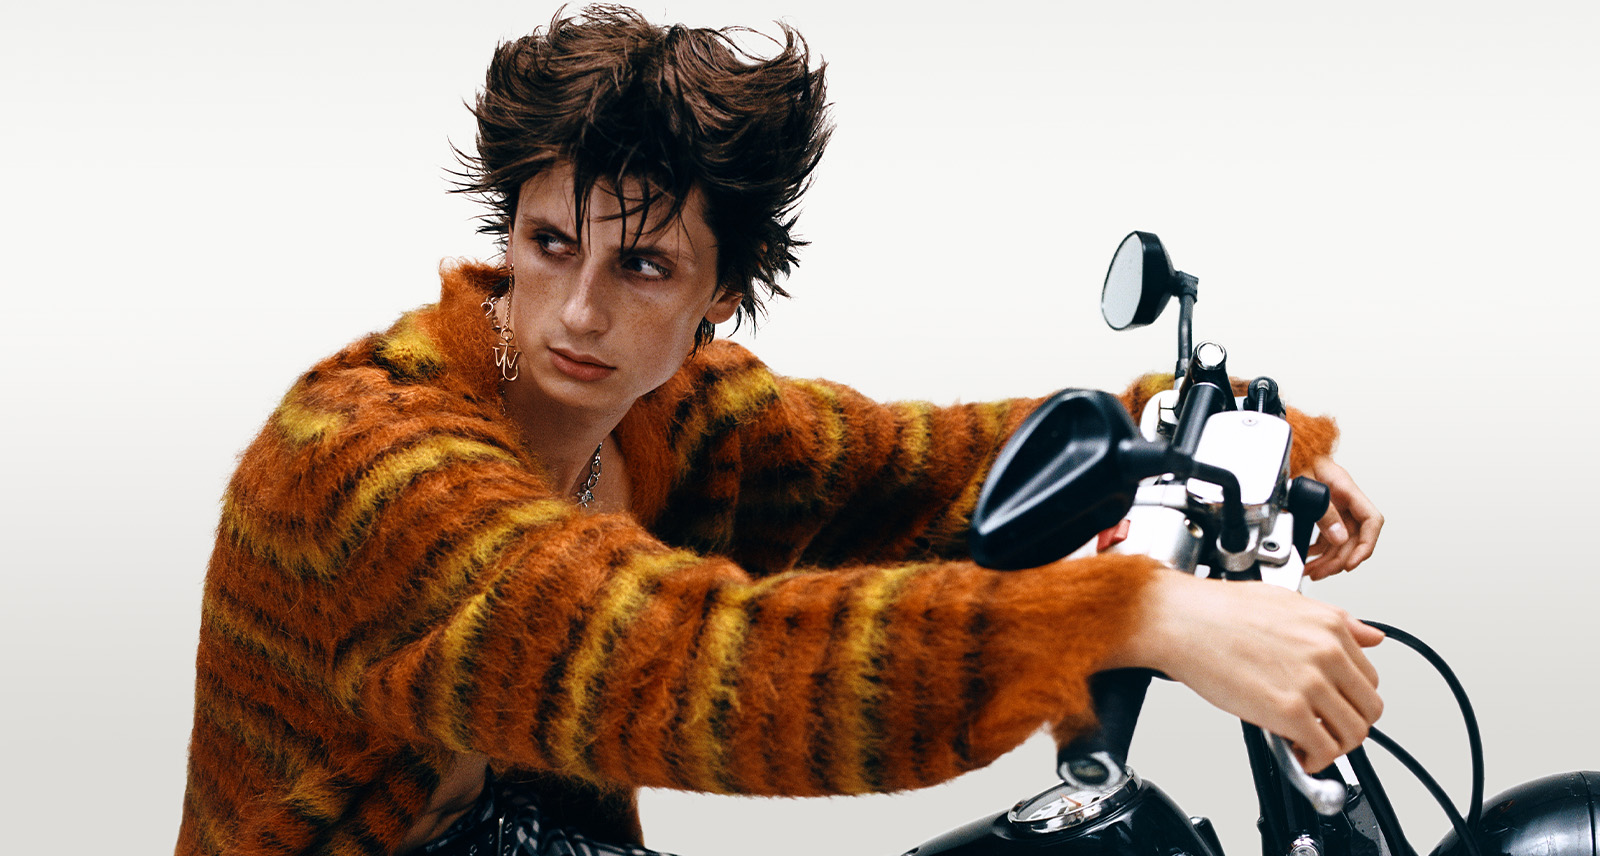 Model in fuzzy orange sweater on motorcycle